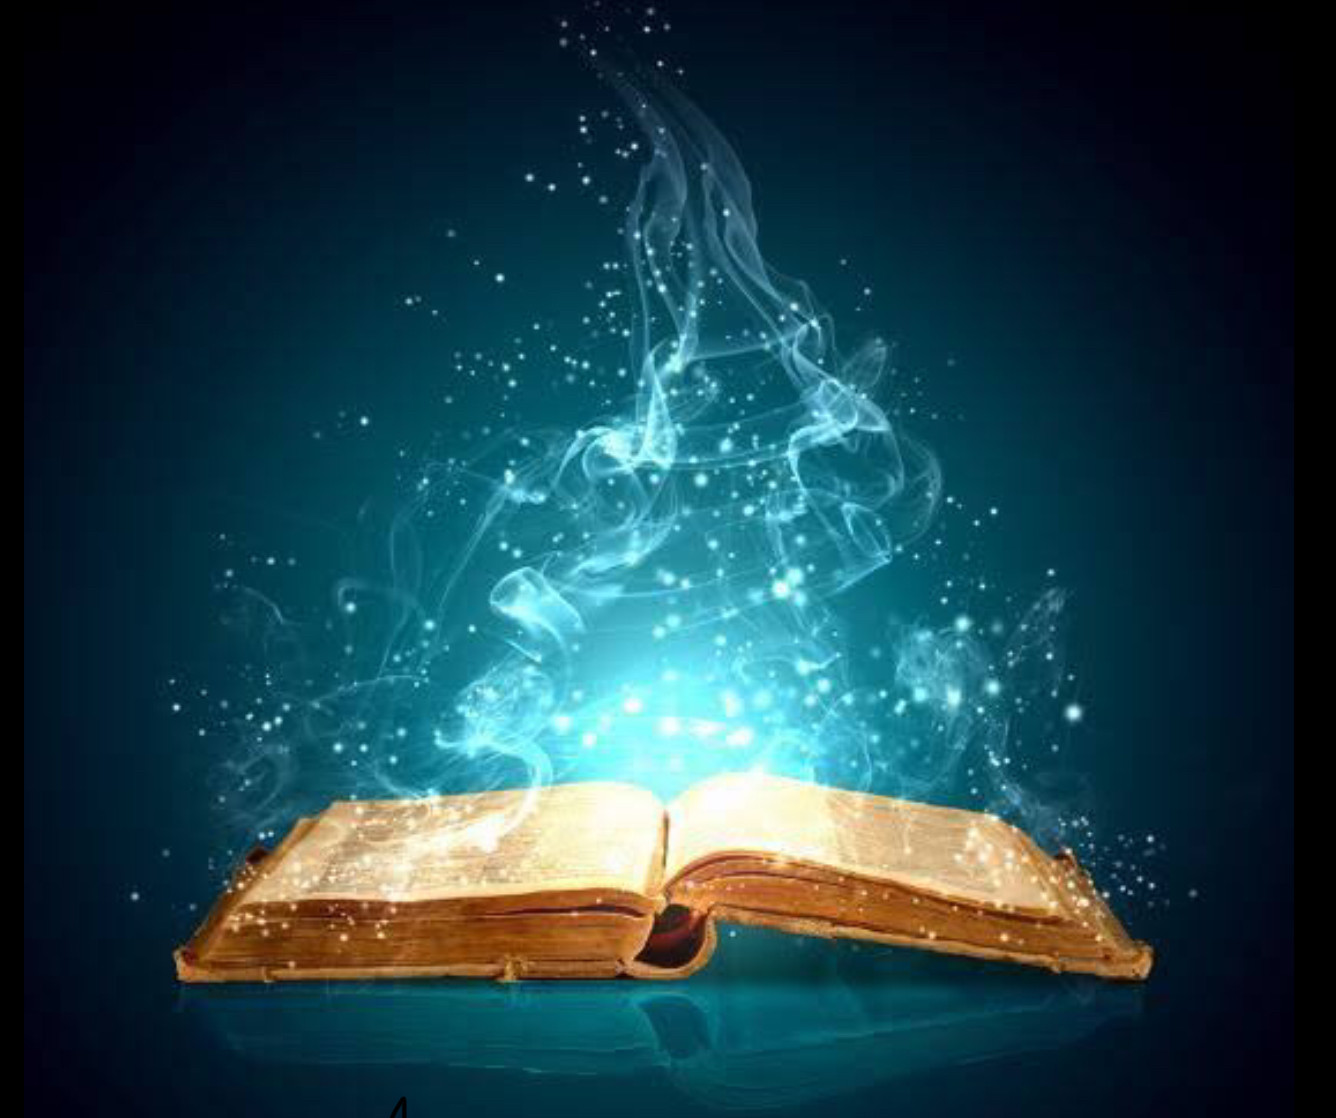 The magic book